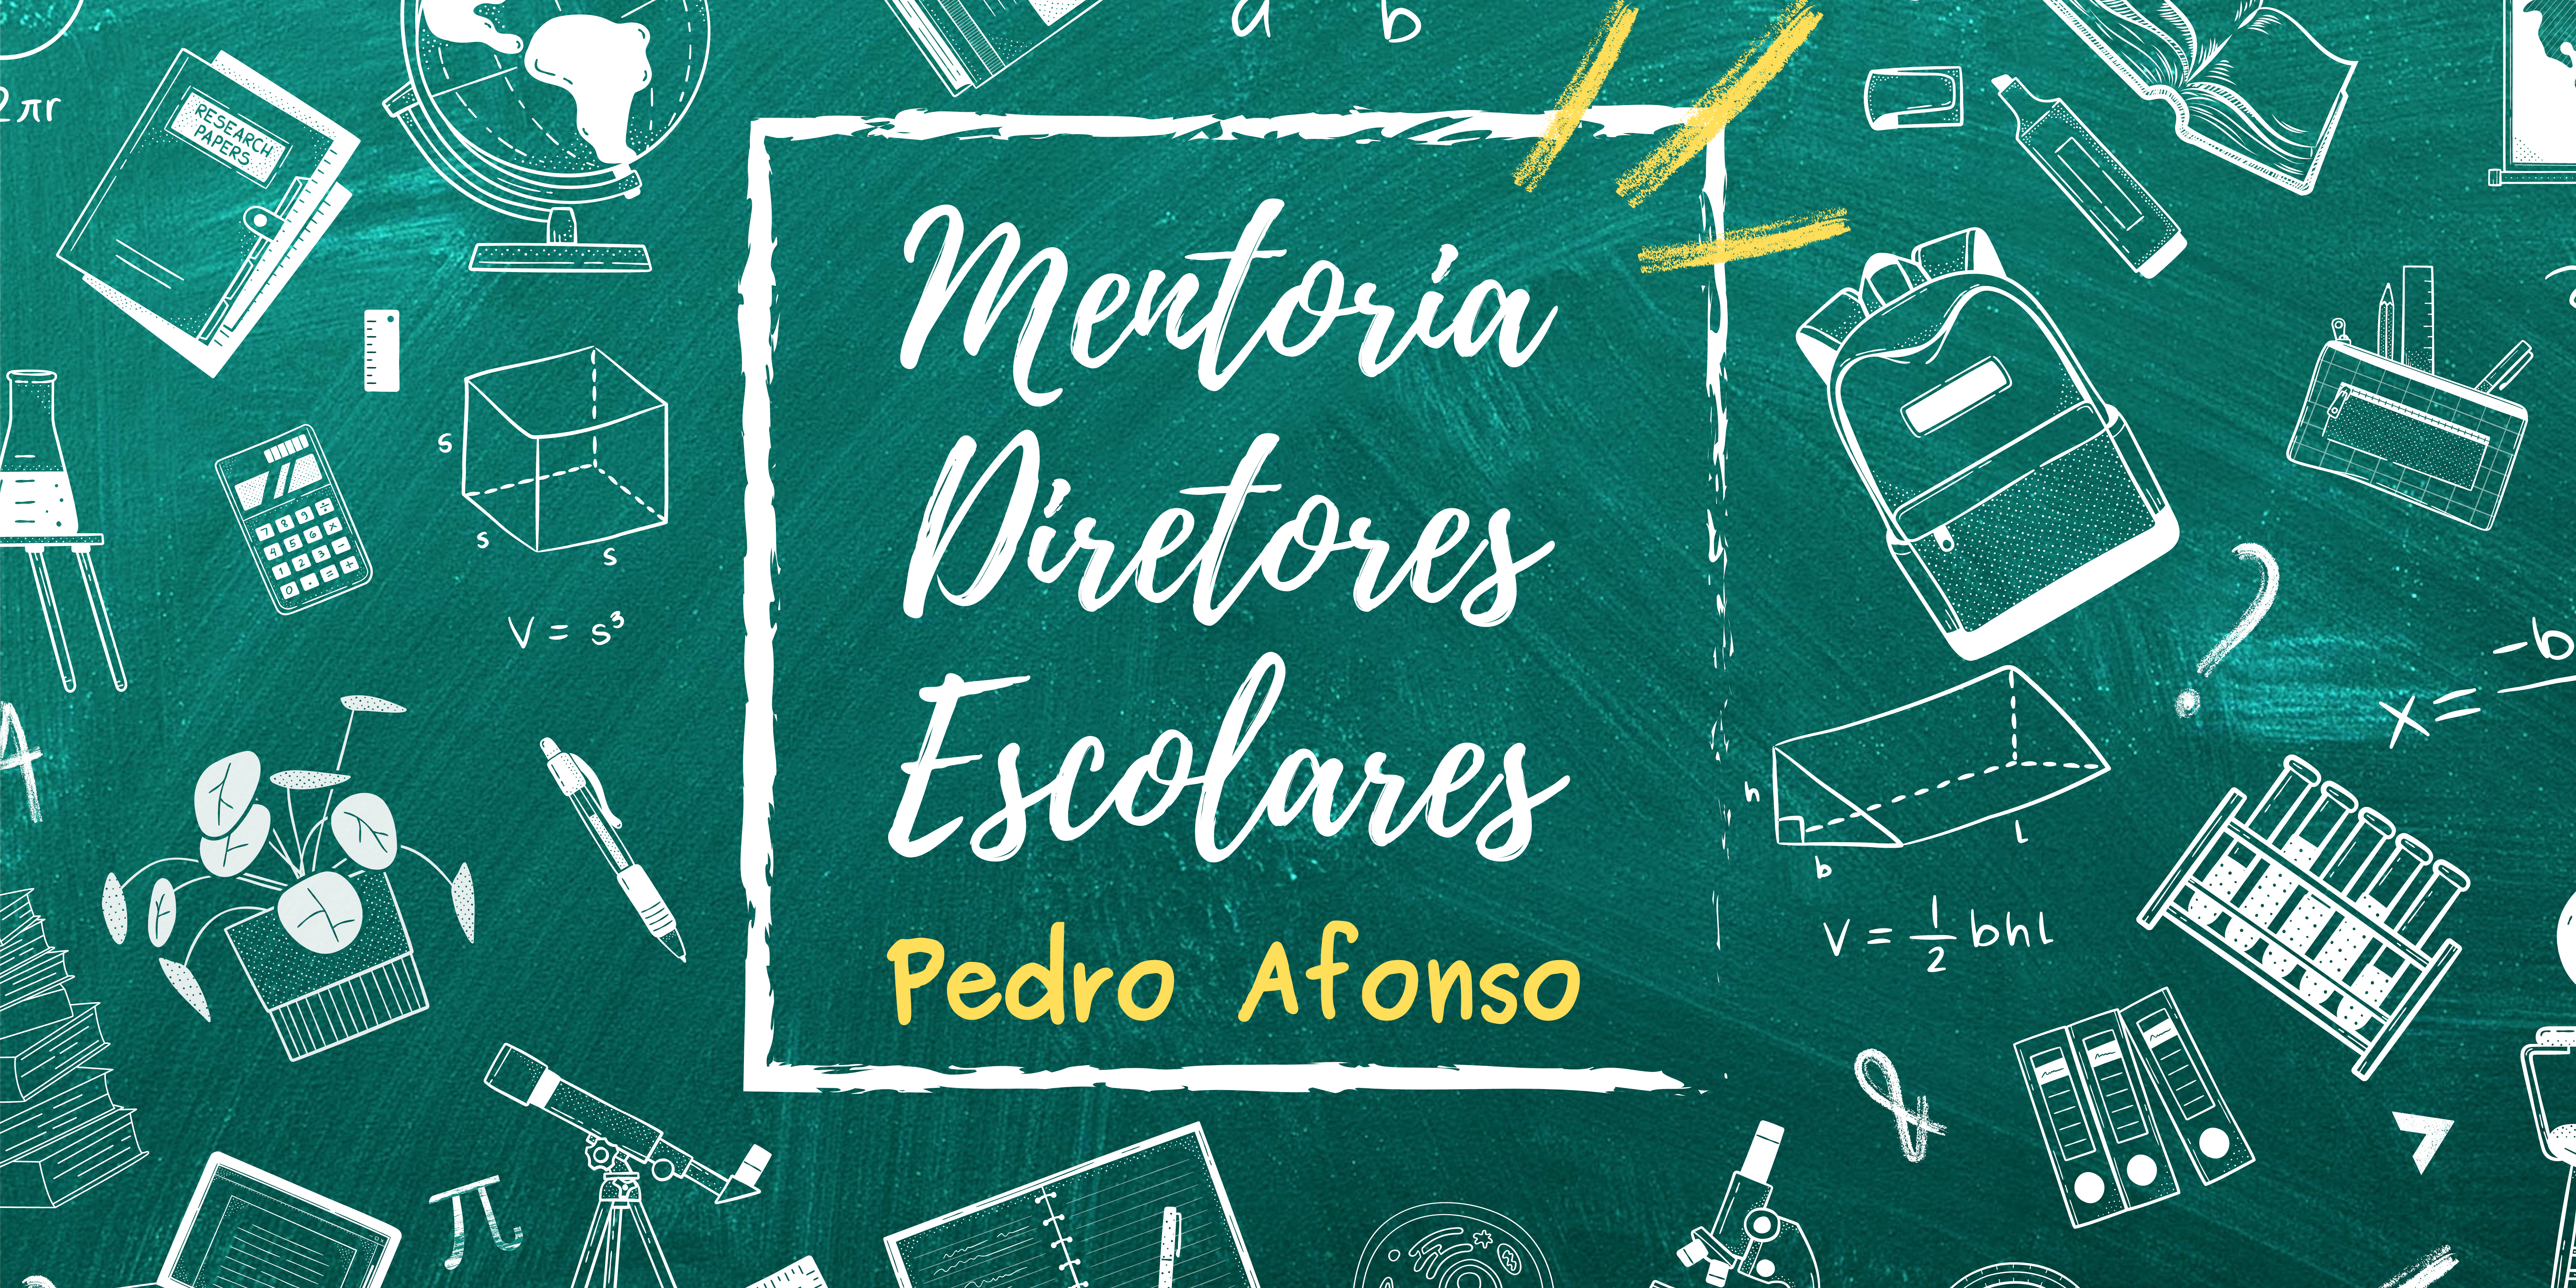 Curso de Aperfeiçoamento em Mentoria de Diretores Escolares - DRE Pedro Afonso